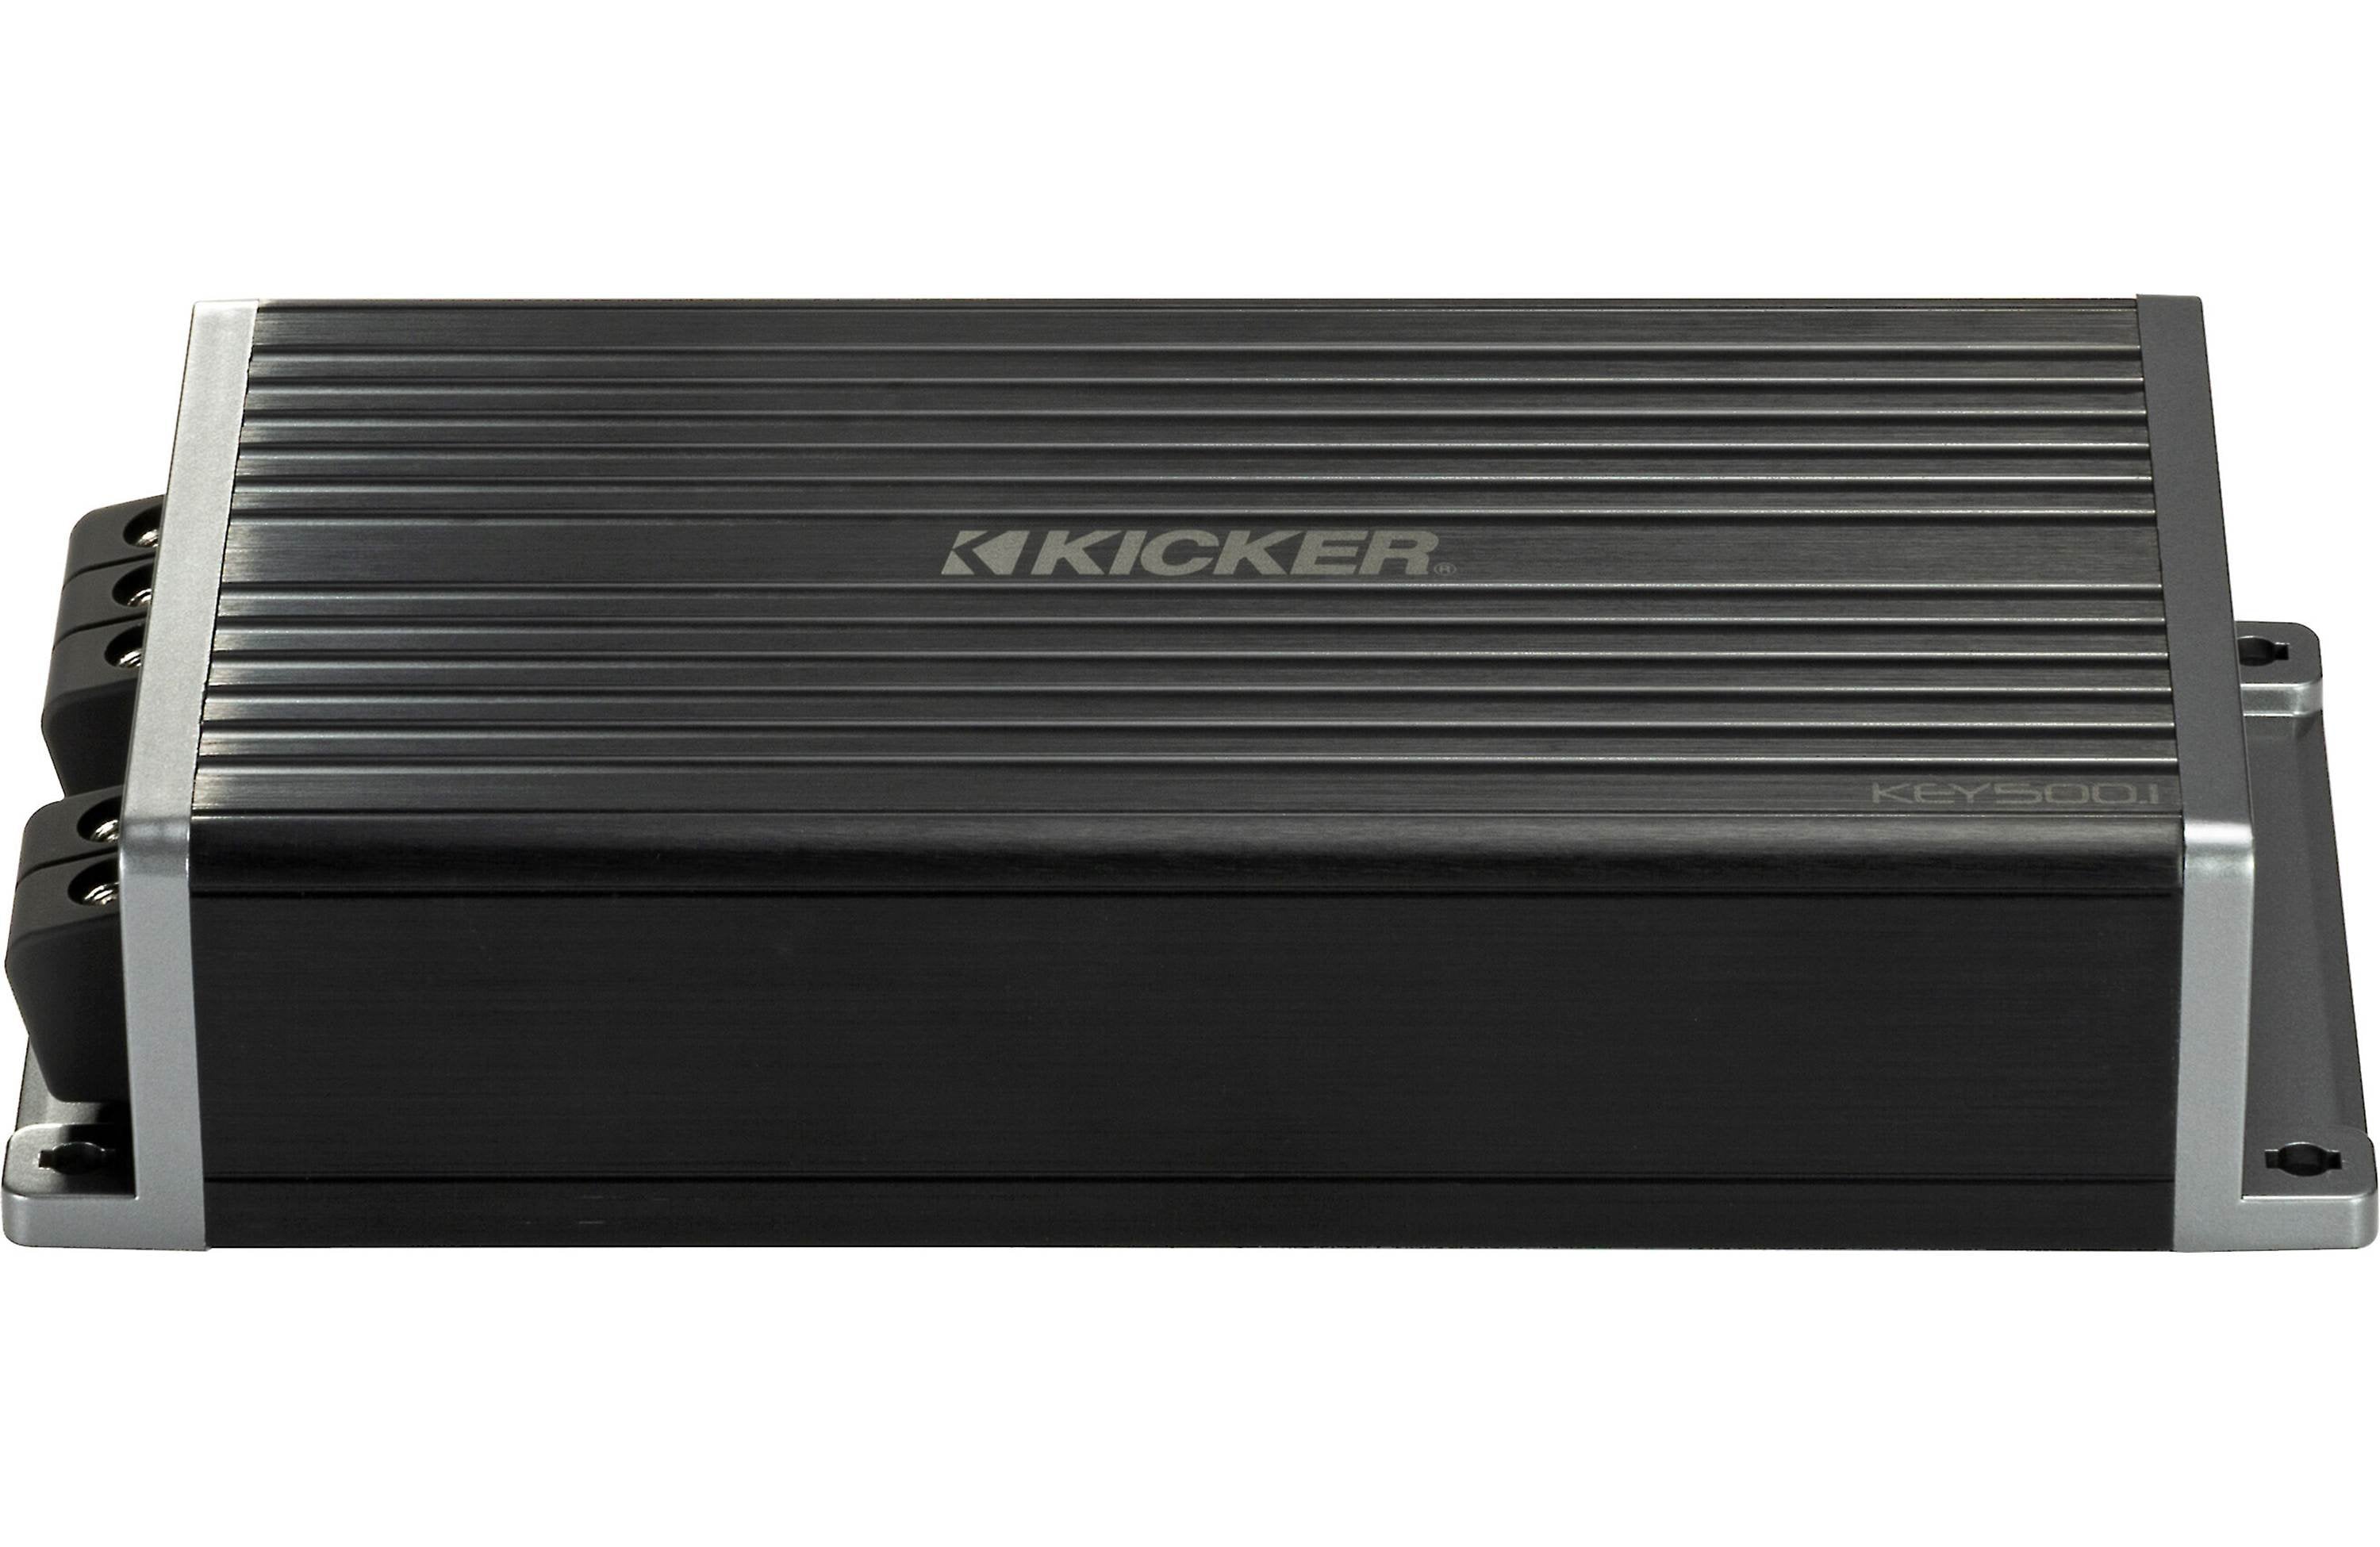 Kicker Key 500.1